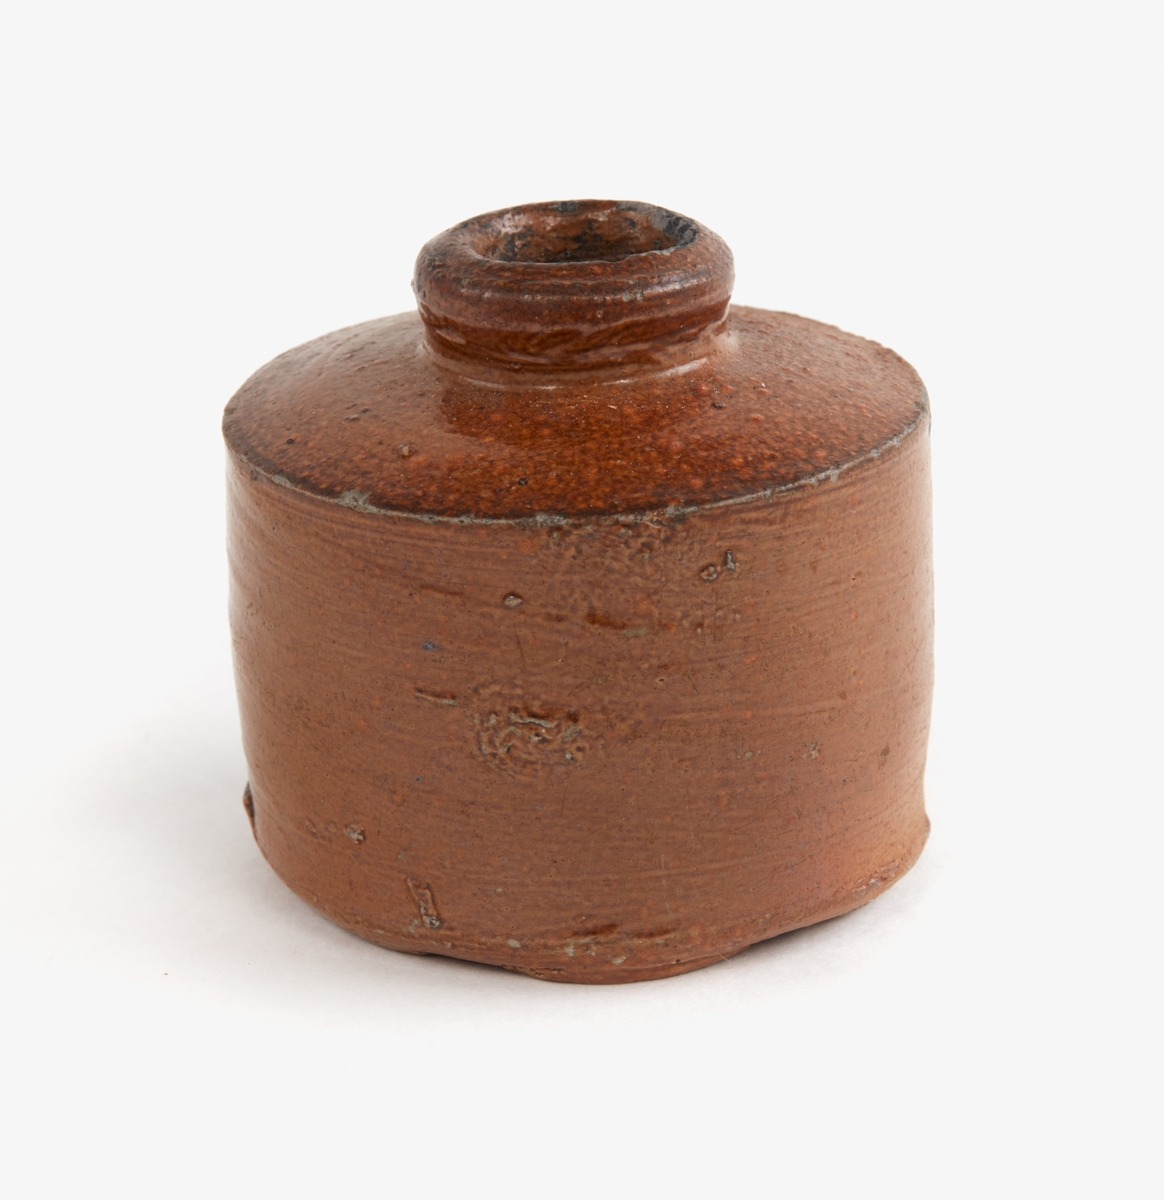 Bläckhorn i grått lergods, brun glasyr. Raka kanter, låg hals.
Märkning: '1840' i blyerts.